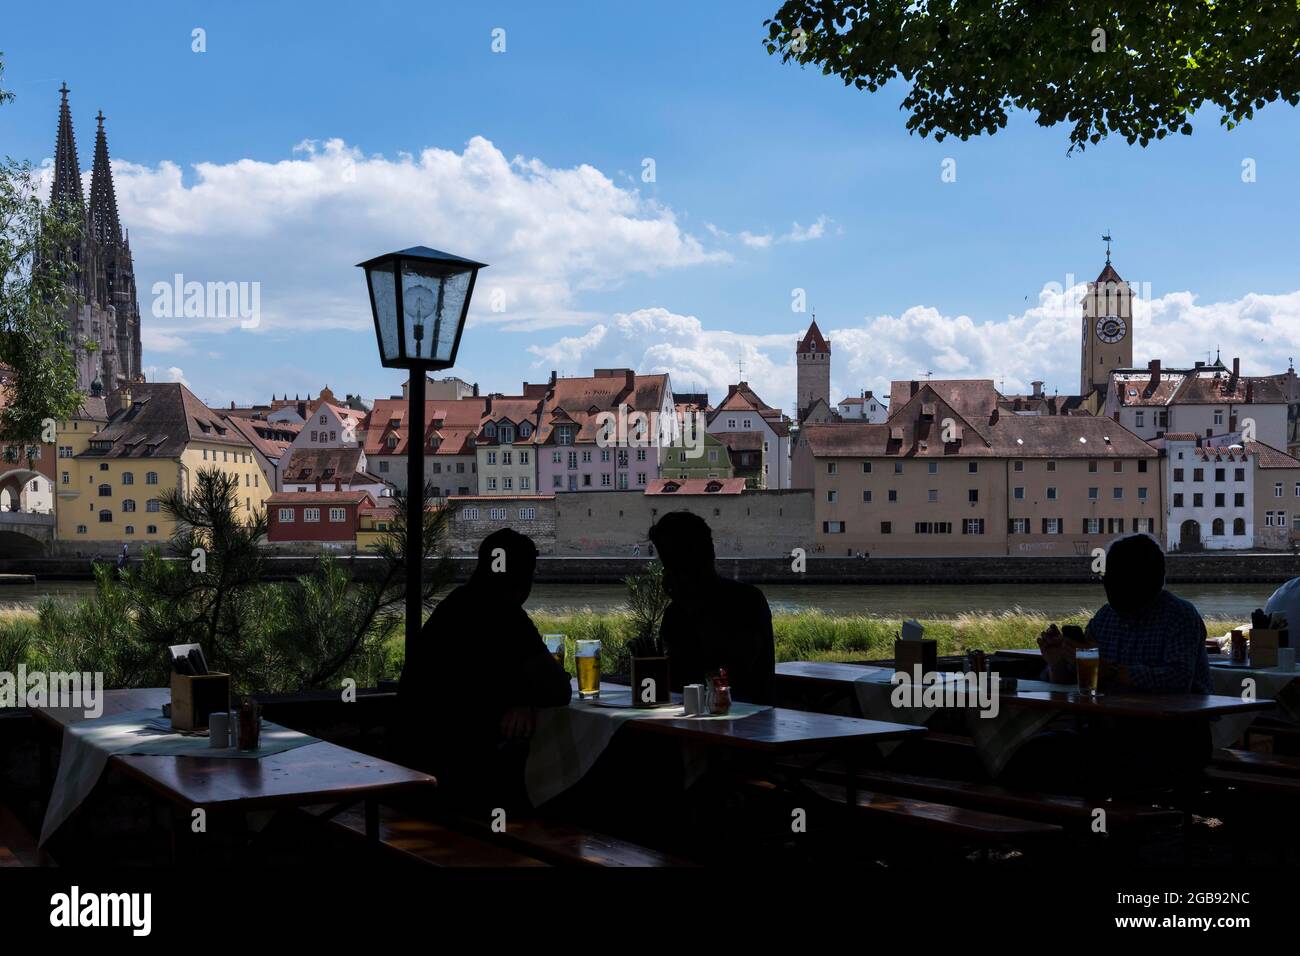 Vue sur la ville avec la cathédrale Saint-Pierre, en face du café en plein air avec des clients comme silhouette, Regensburg, Haut-Palatinat, Bavière, Allemagne Banque D'Images